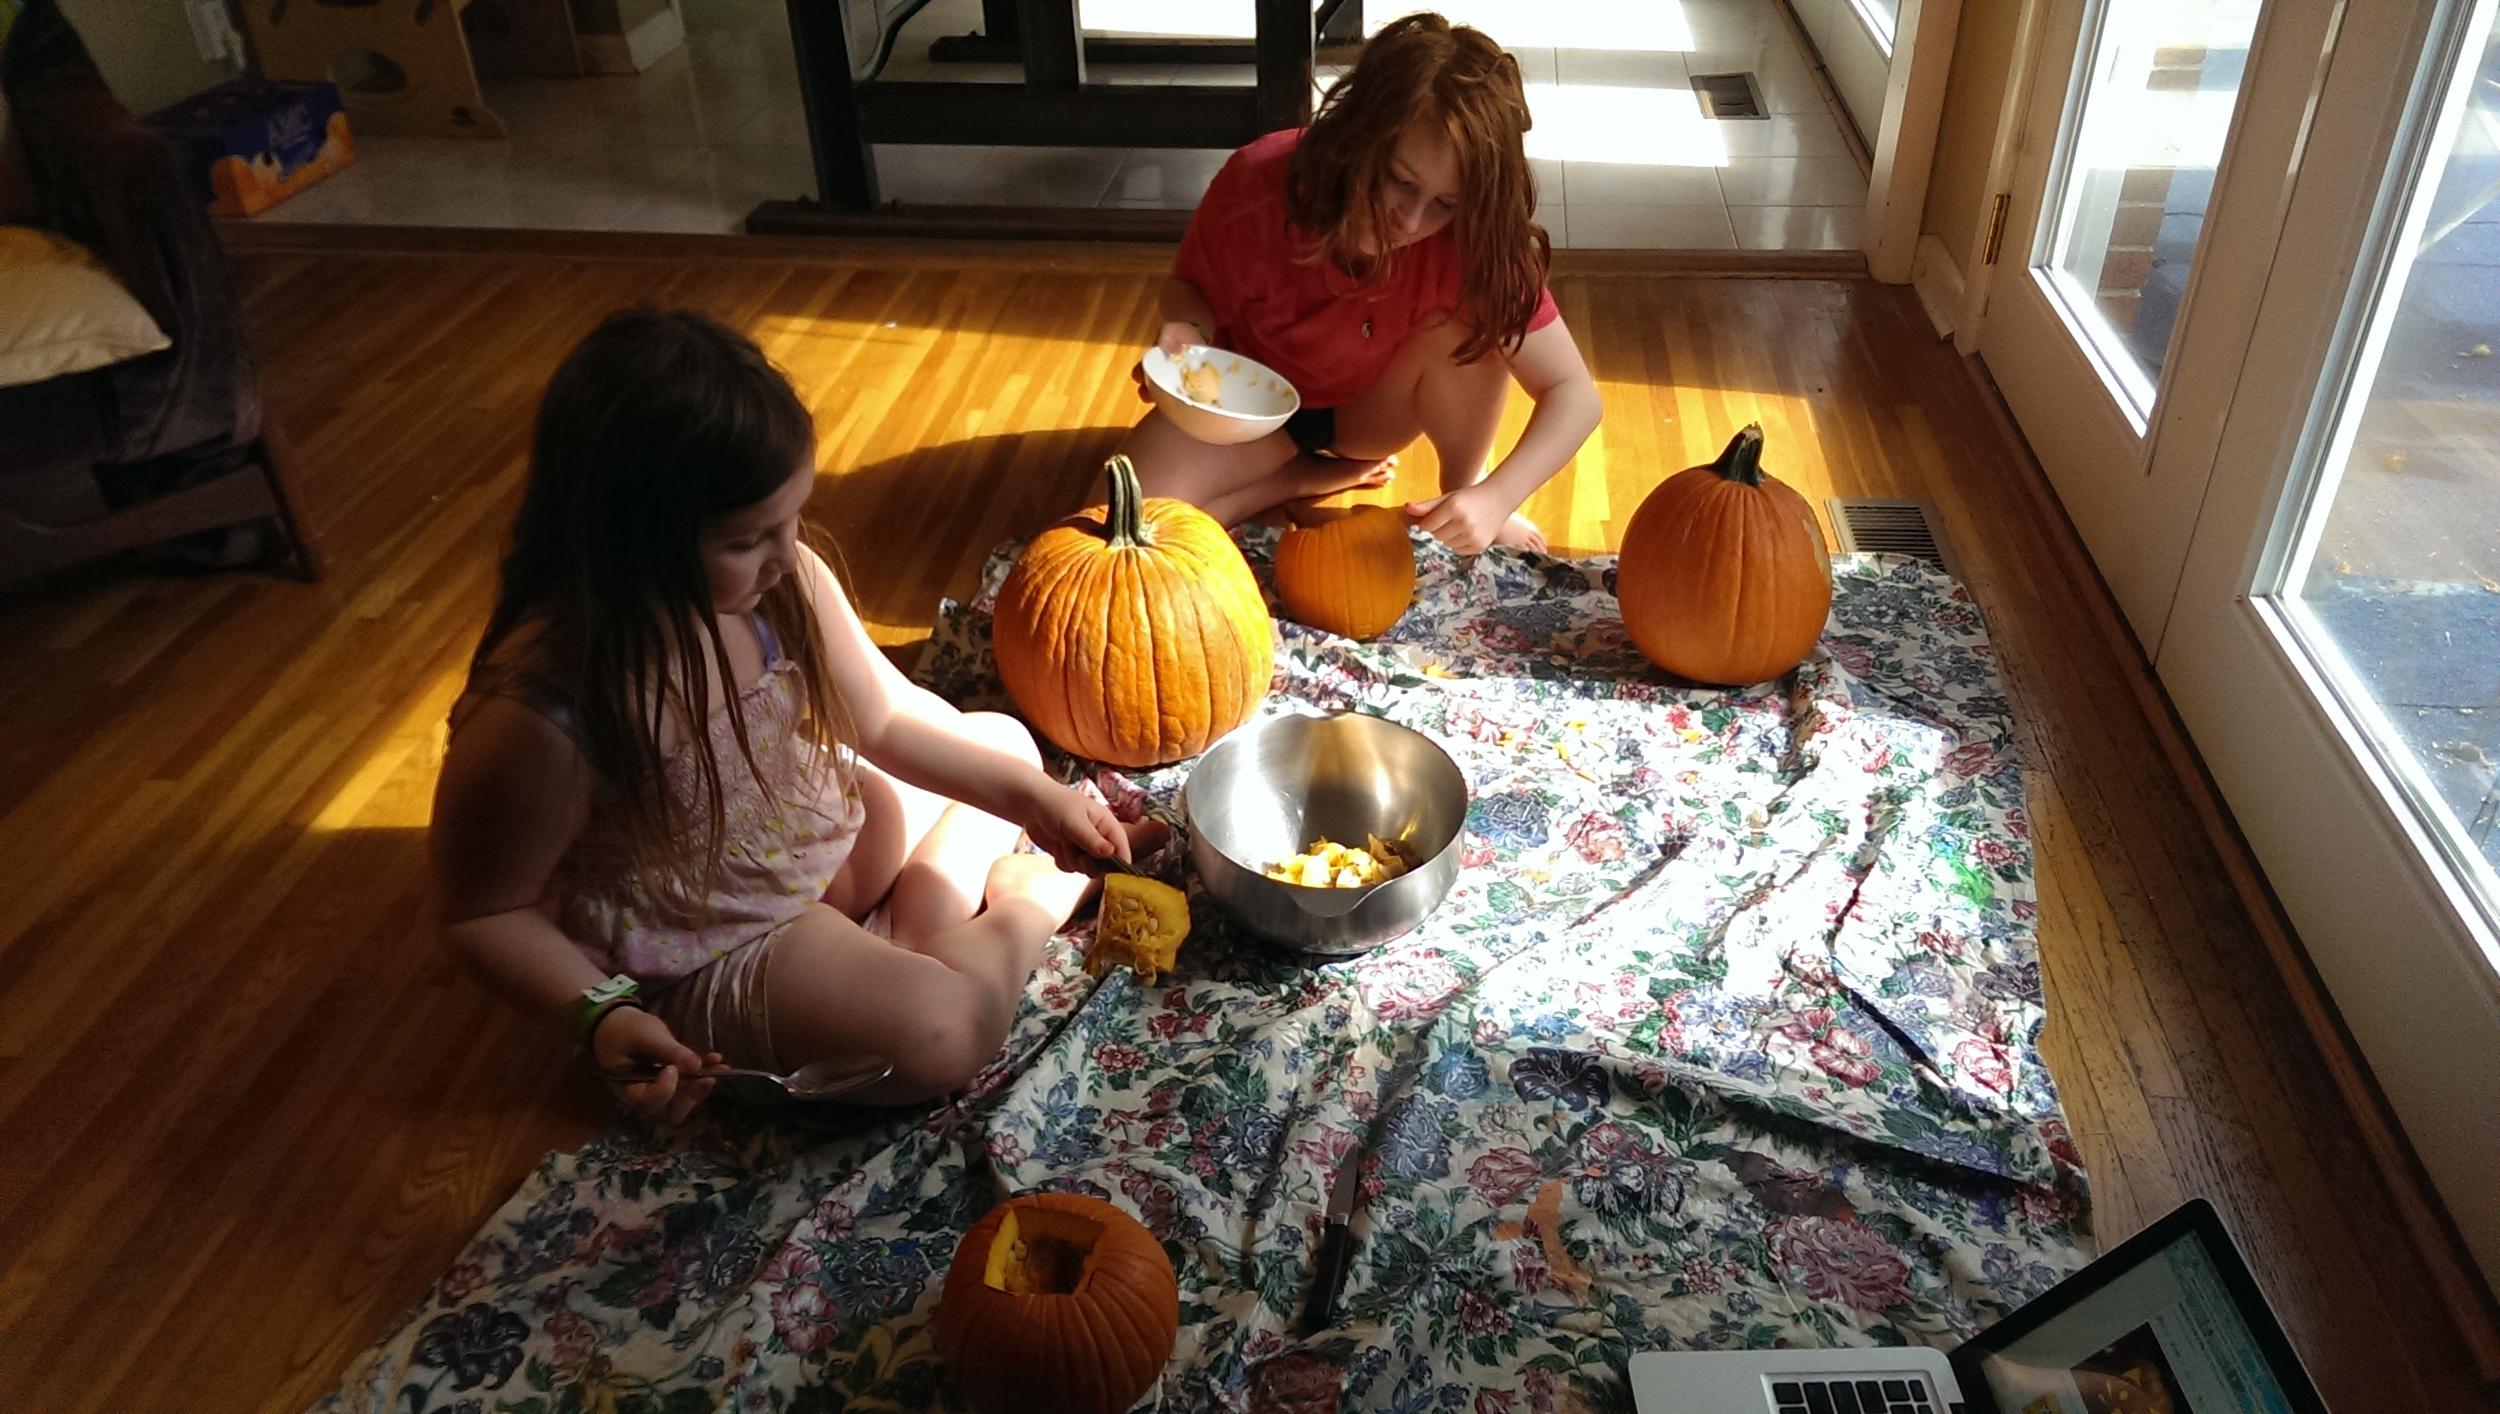 We carved pumpkins.